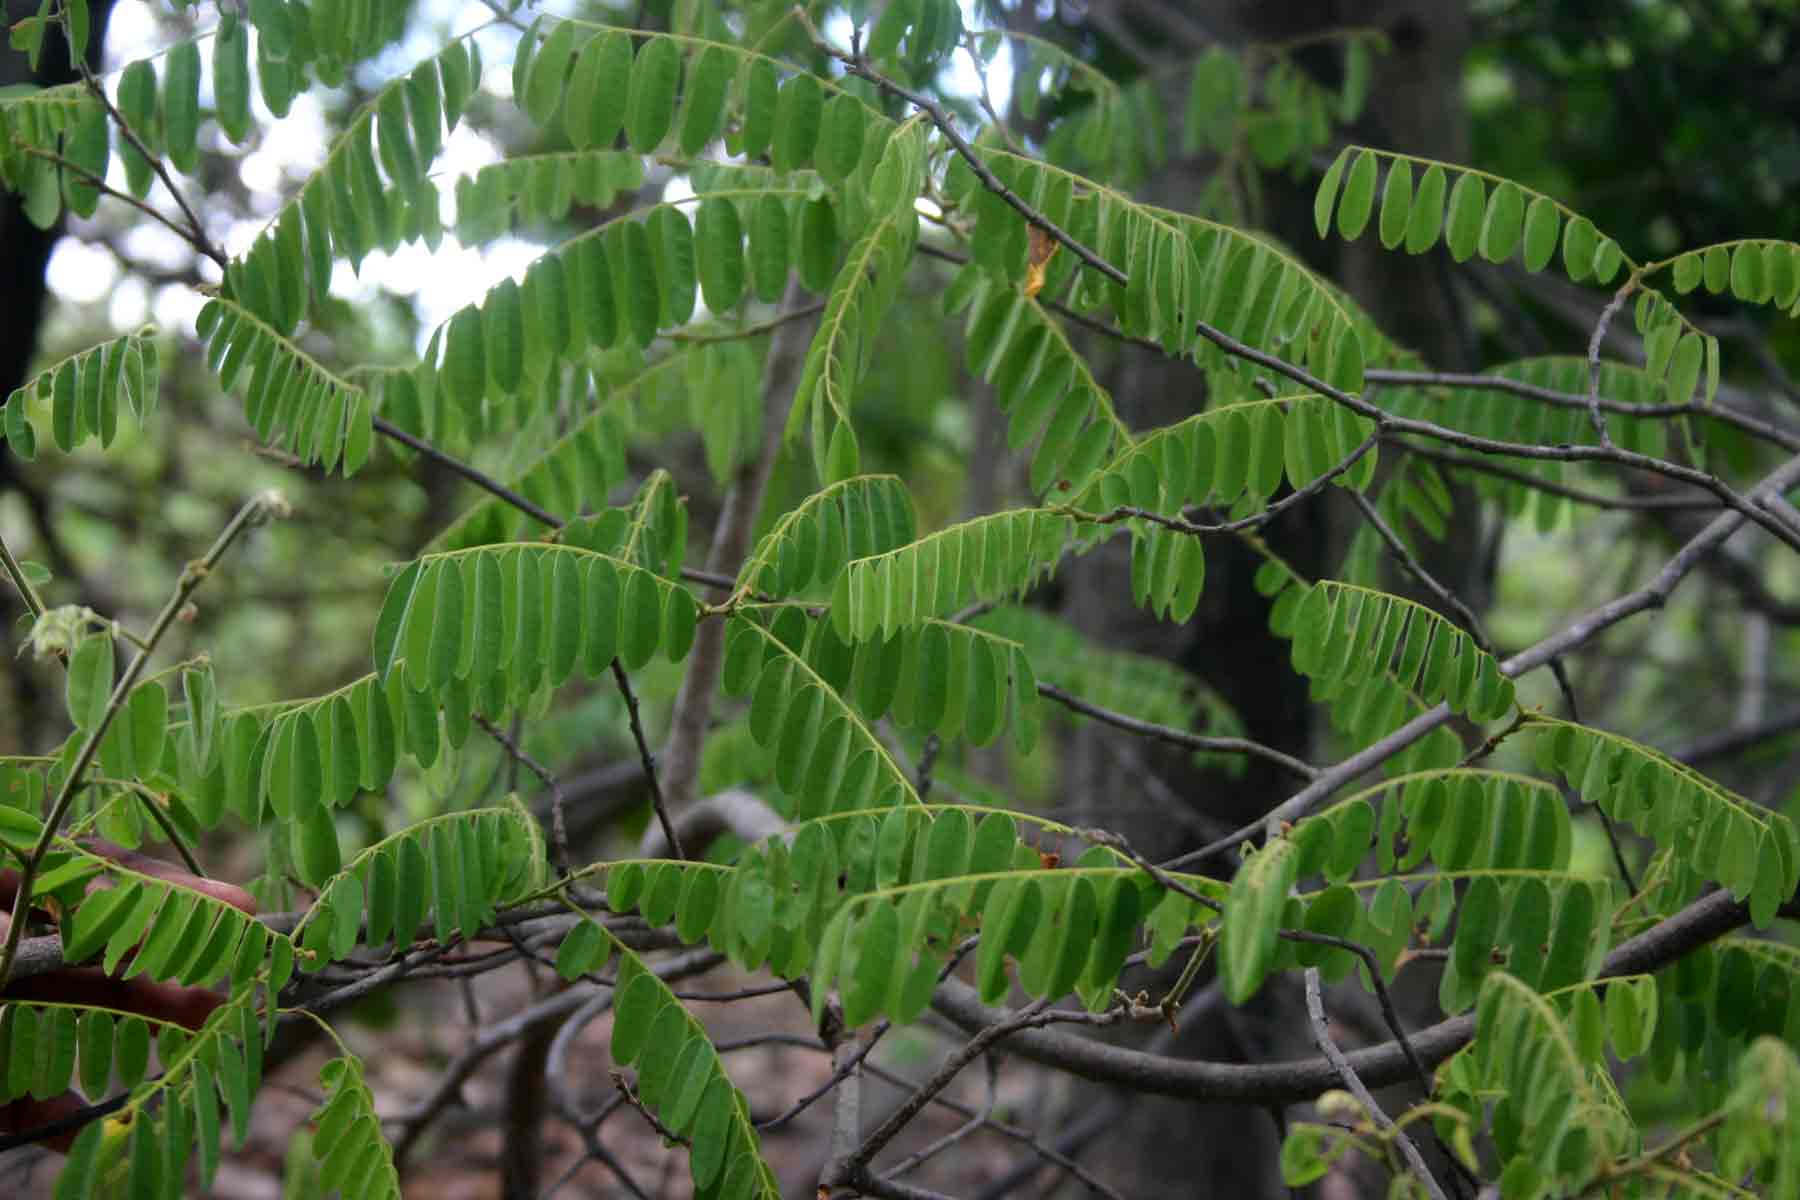 Rourea orientalis